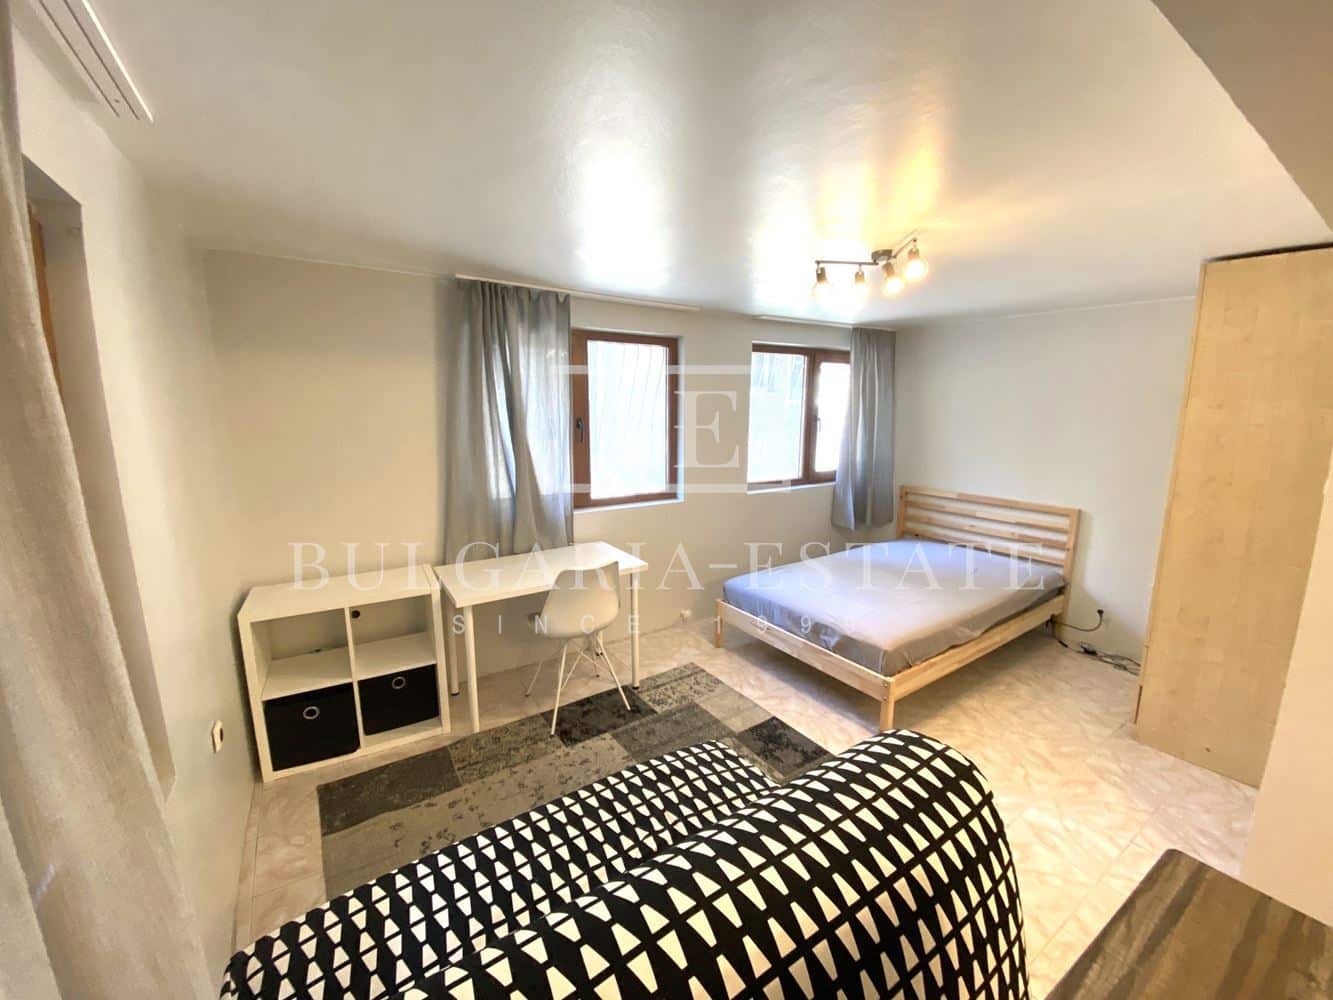 1-bedroom apartment for rent, Sevastopol, gr. Varna, near IU - VARNA, VINS - 0